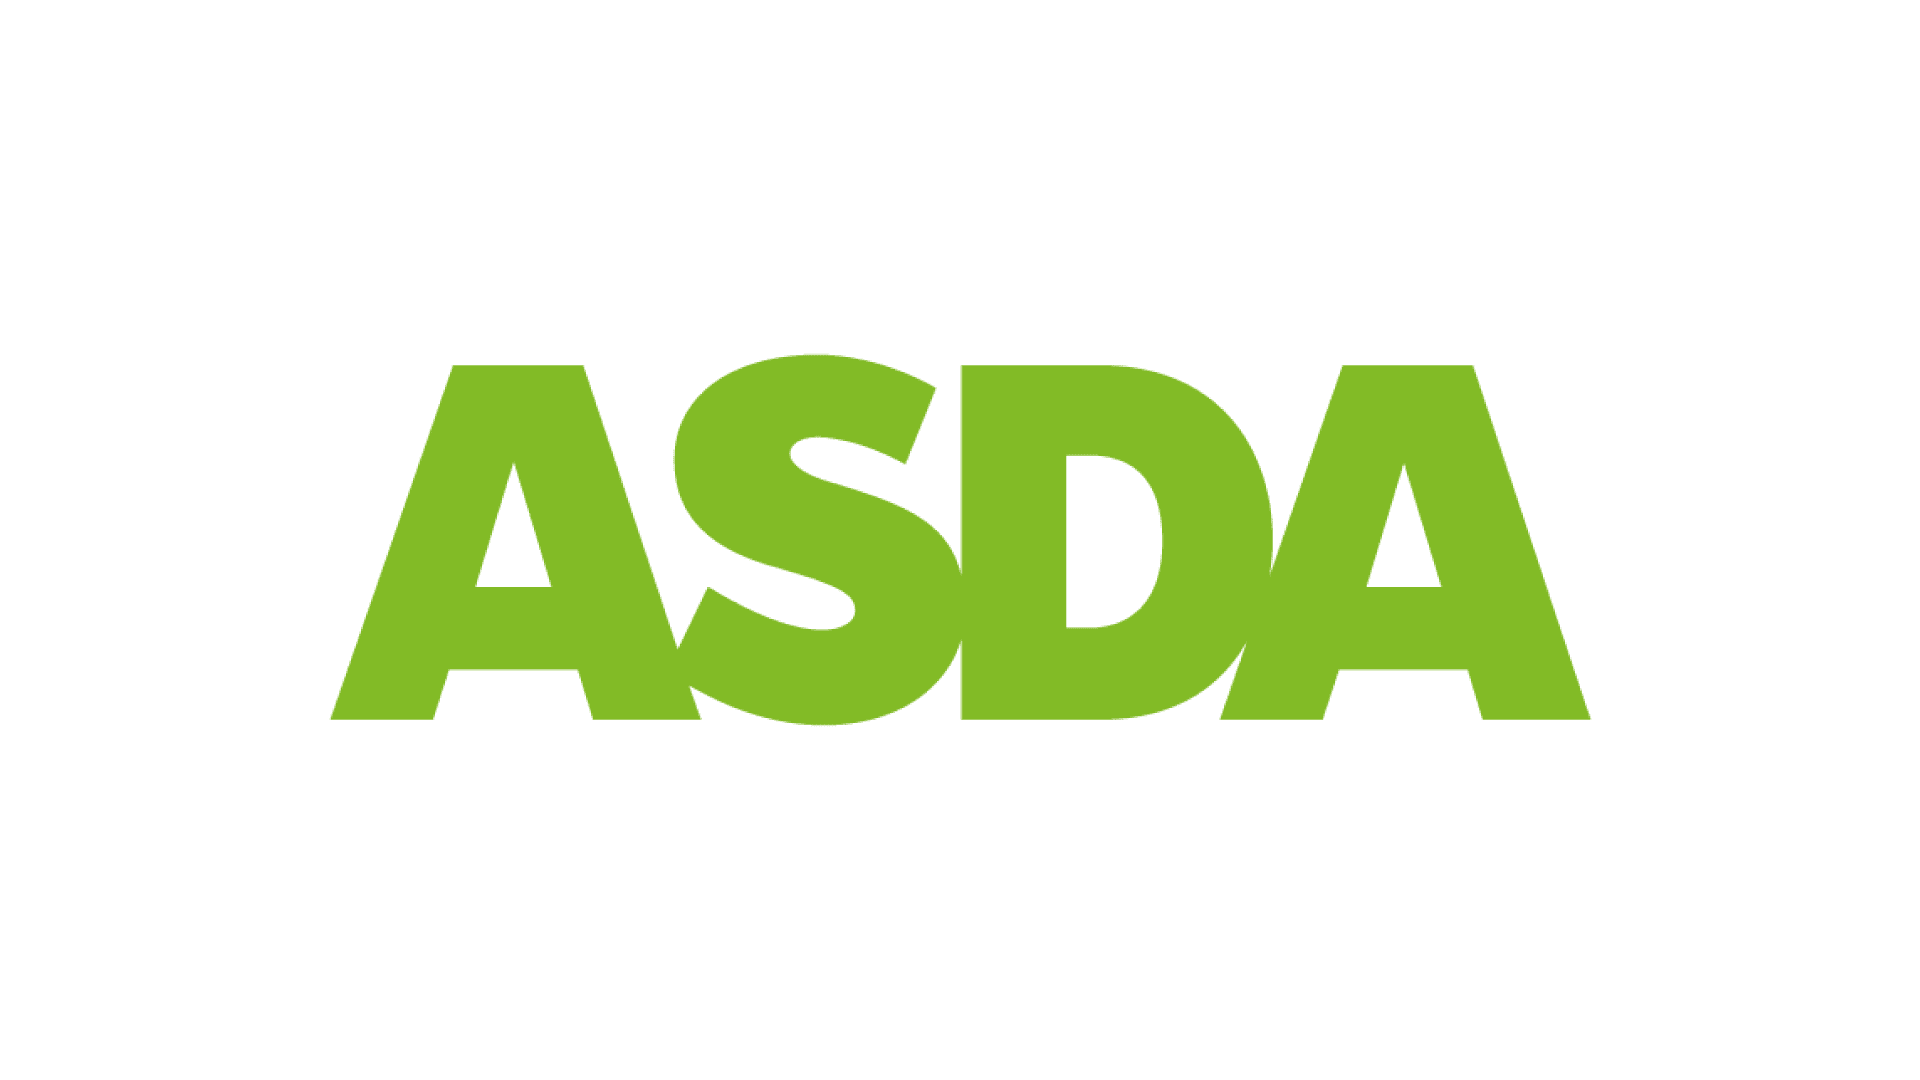 Asda supermarkets work with CADS